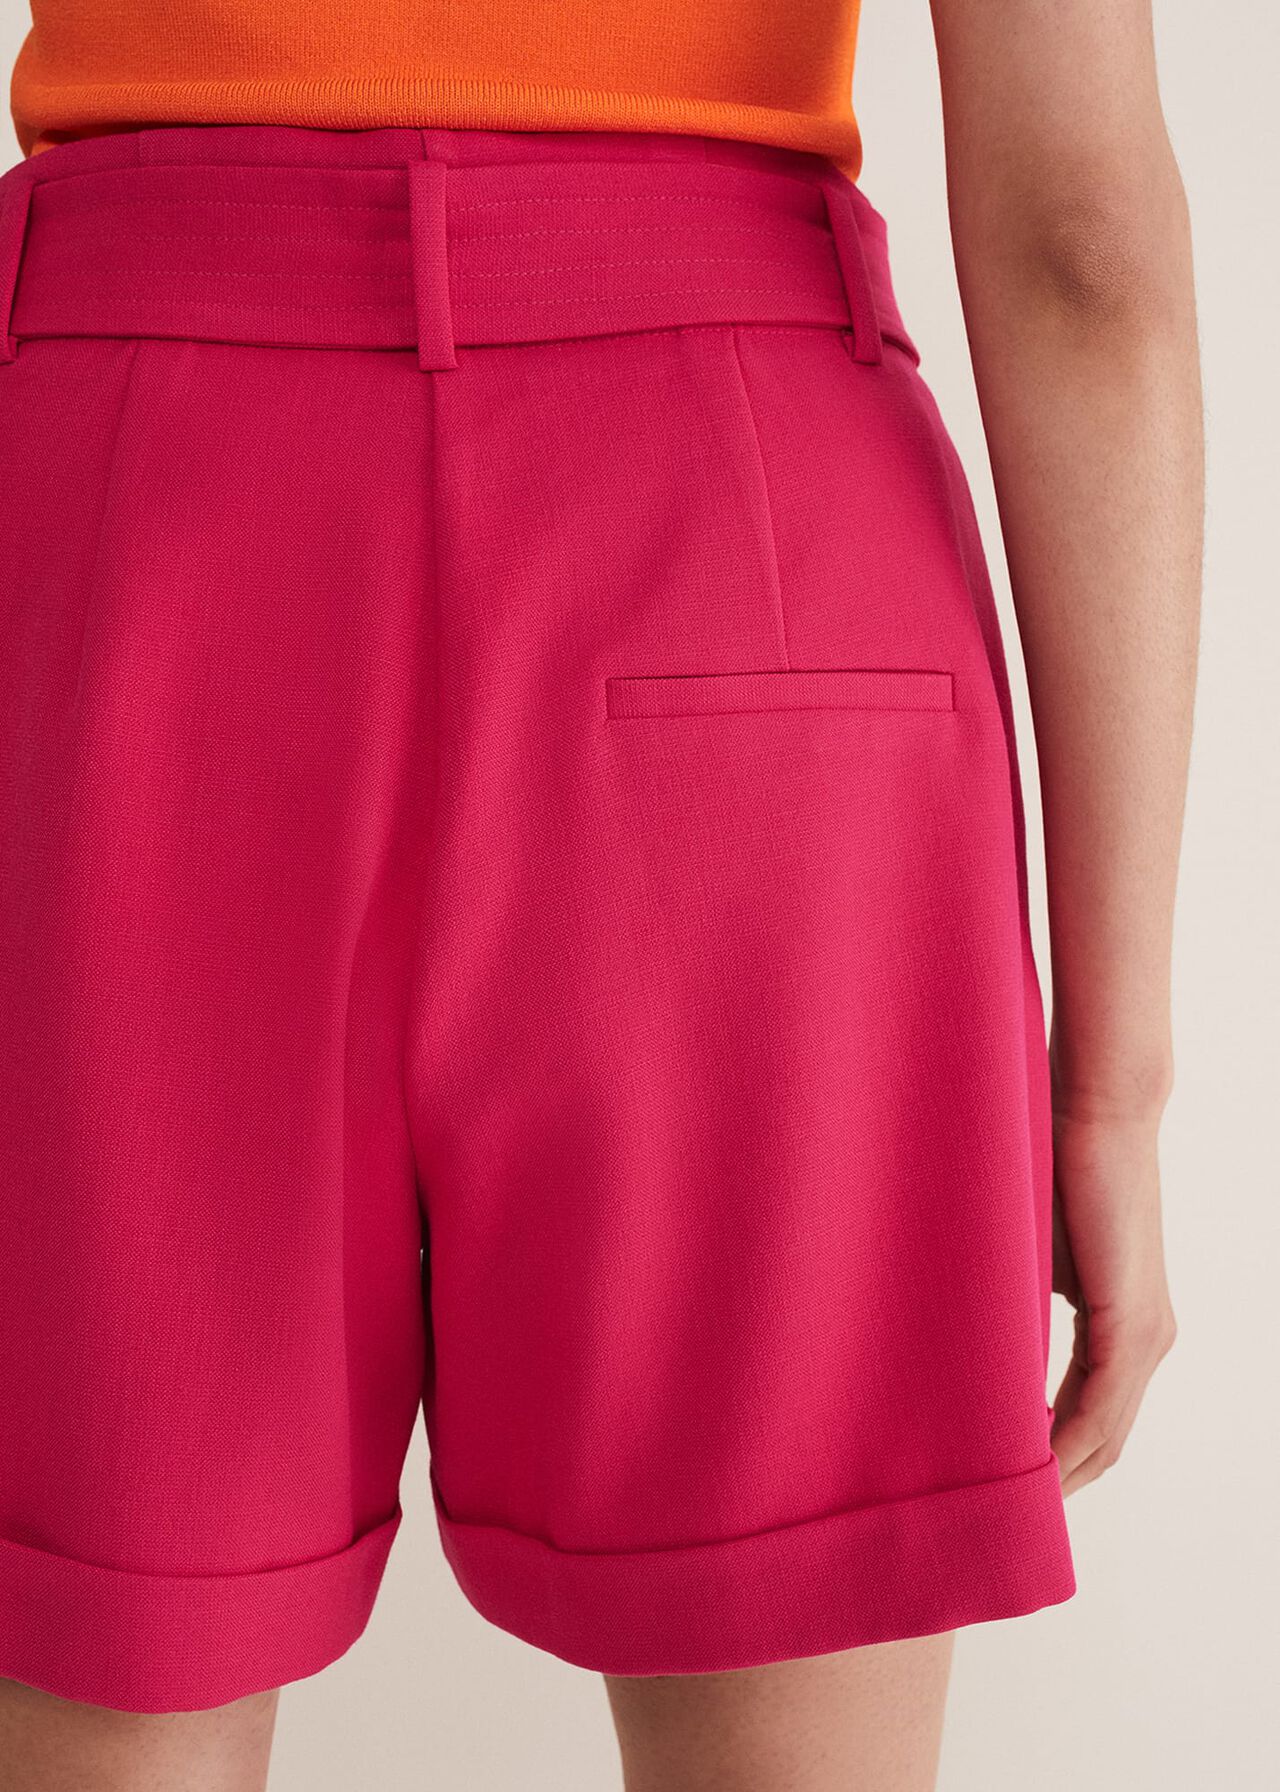 Camilla Pink Shorts